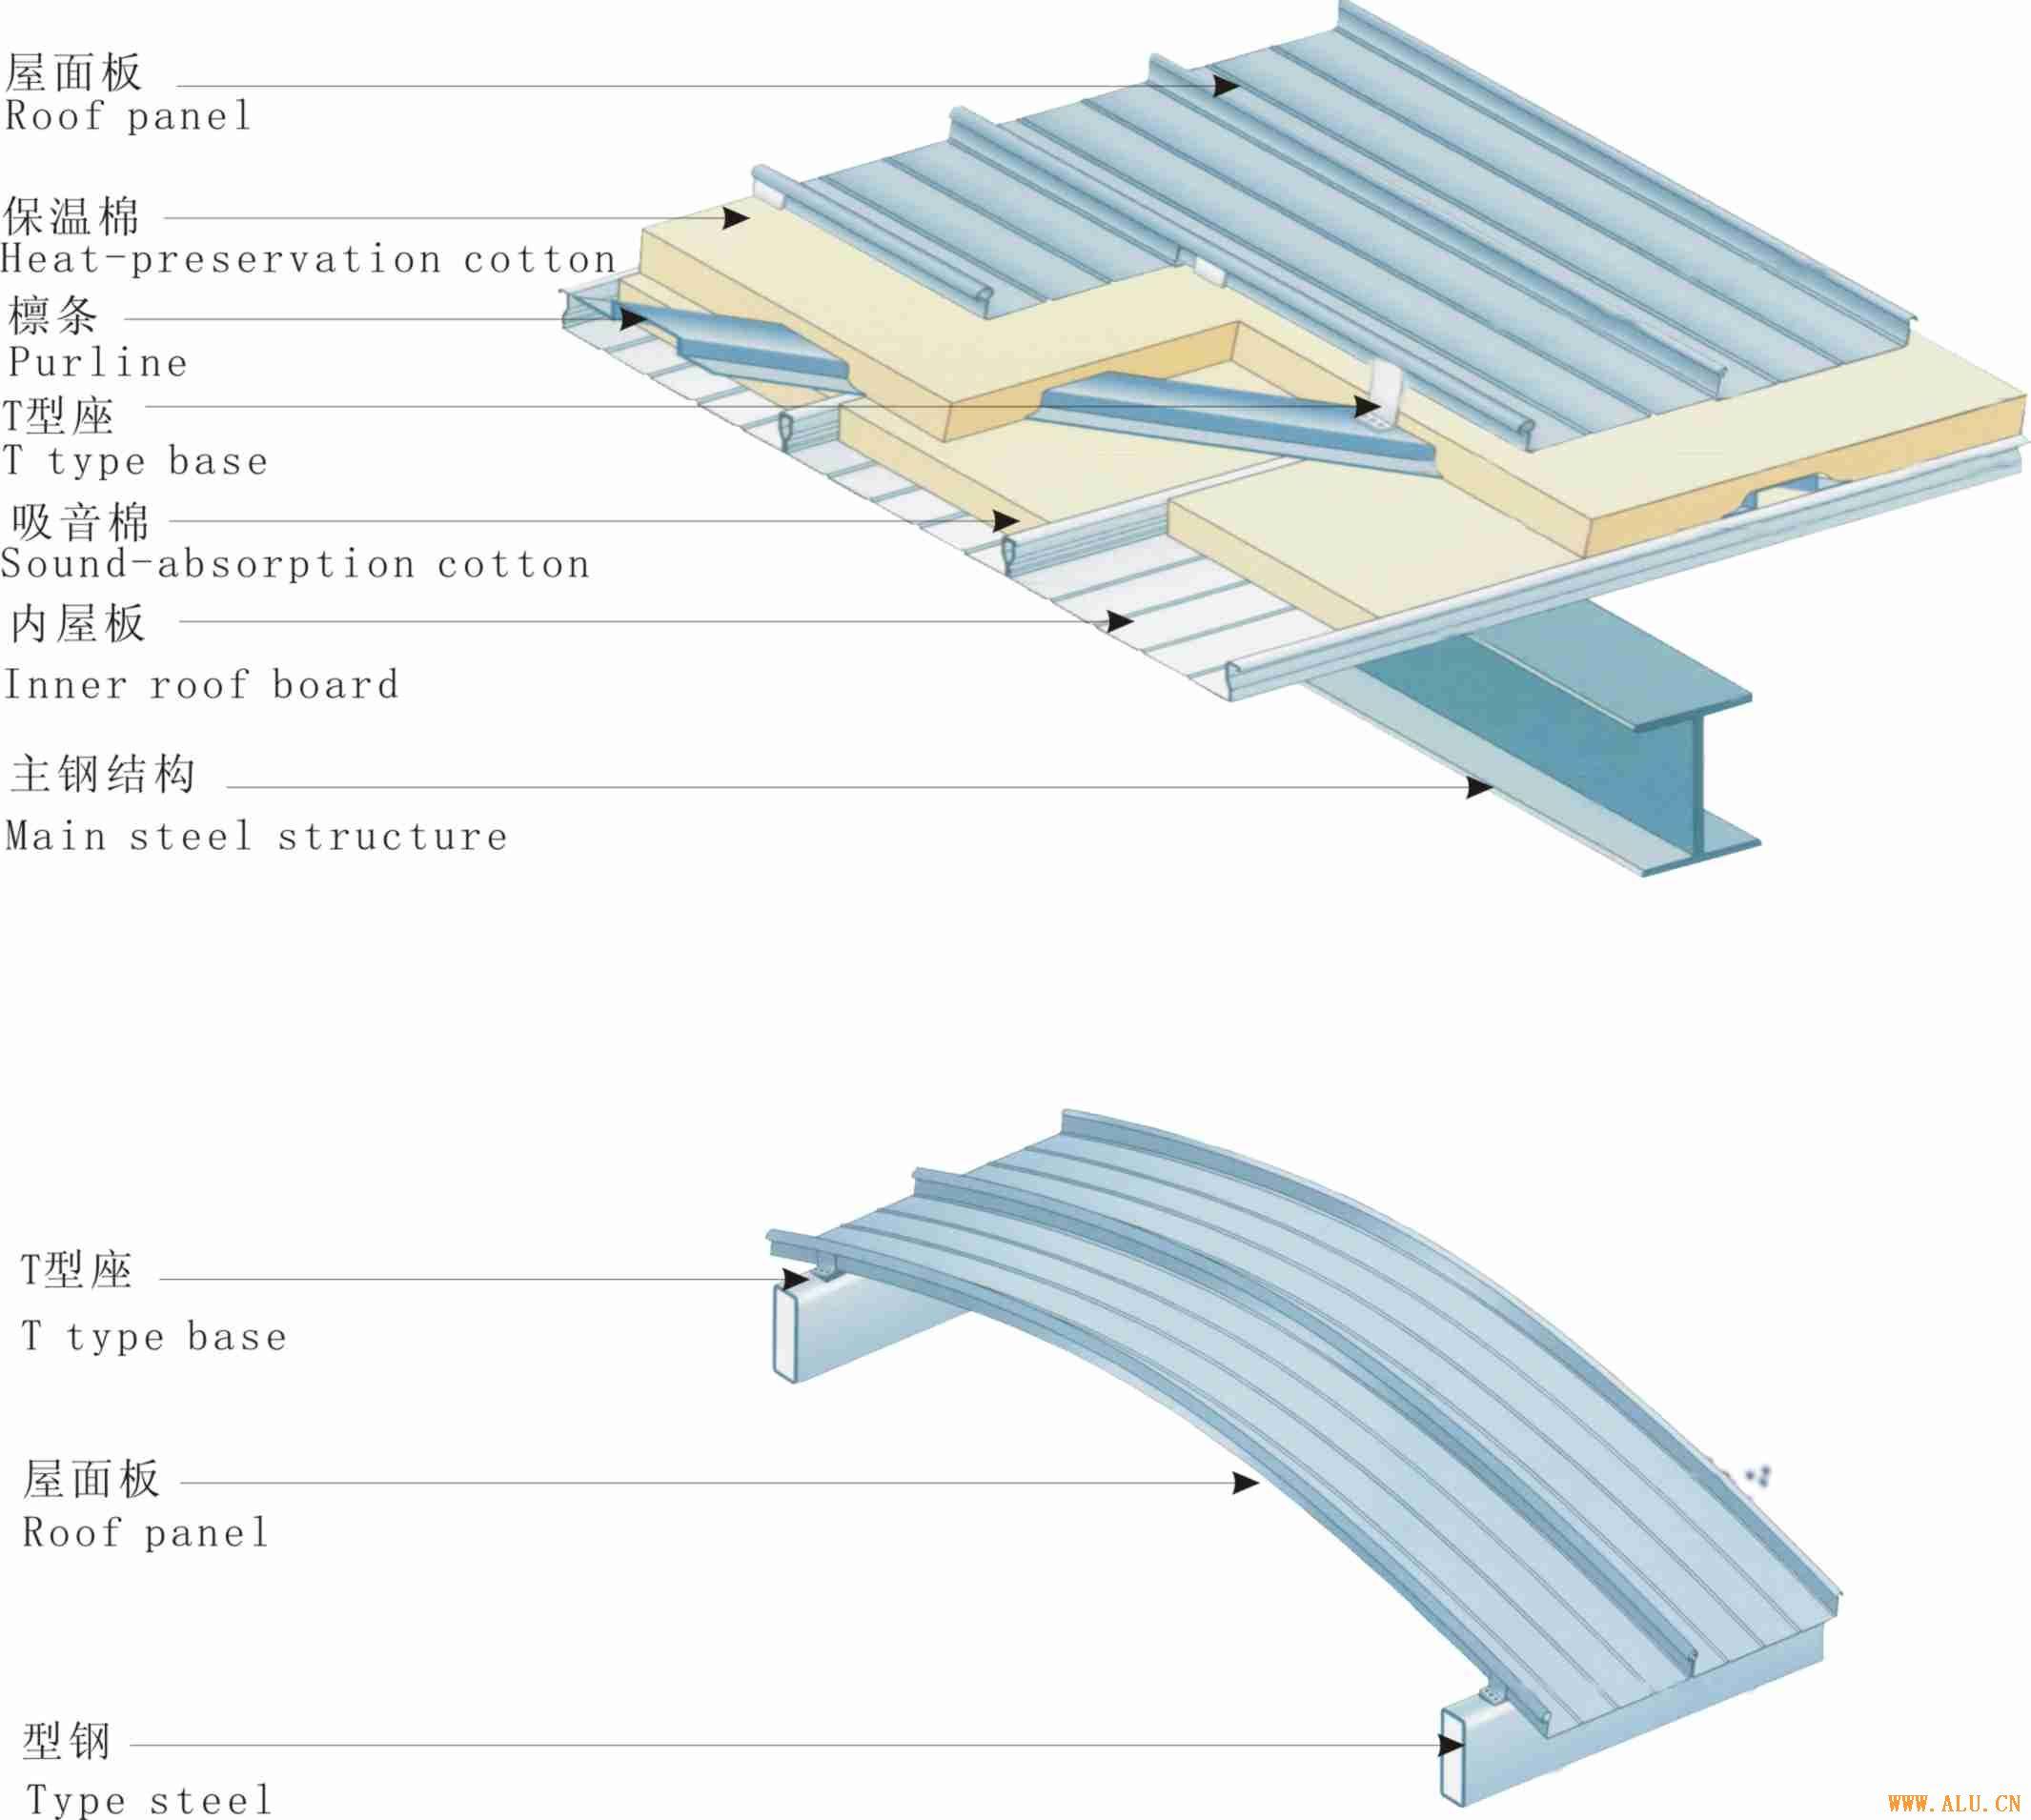 扇形金属屋面/异性屋面系统